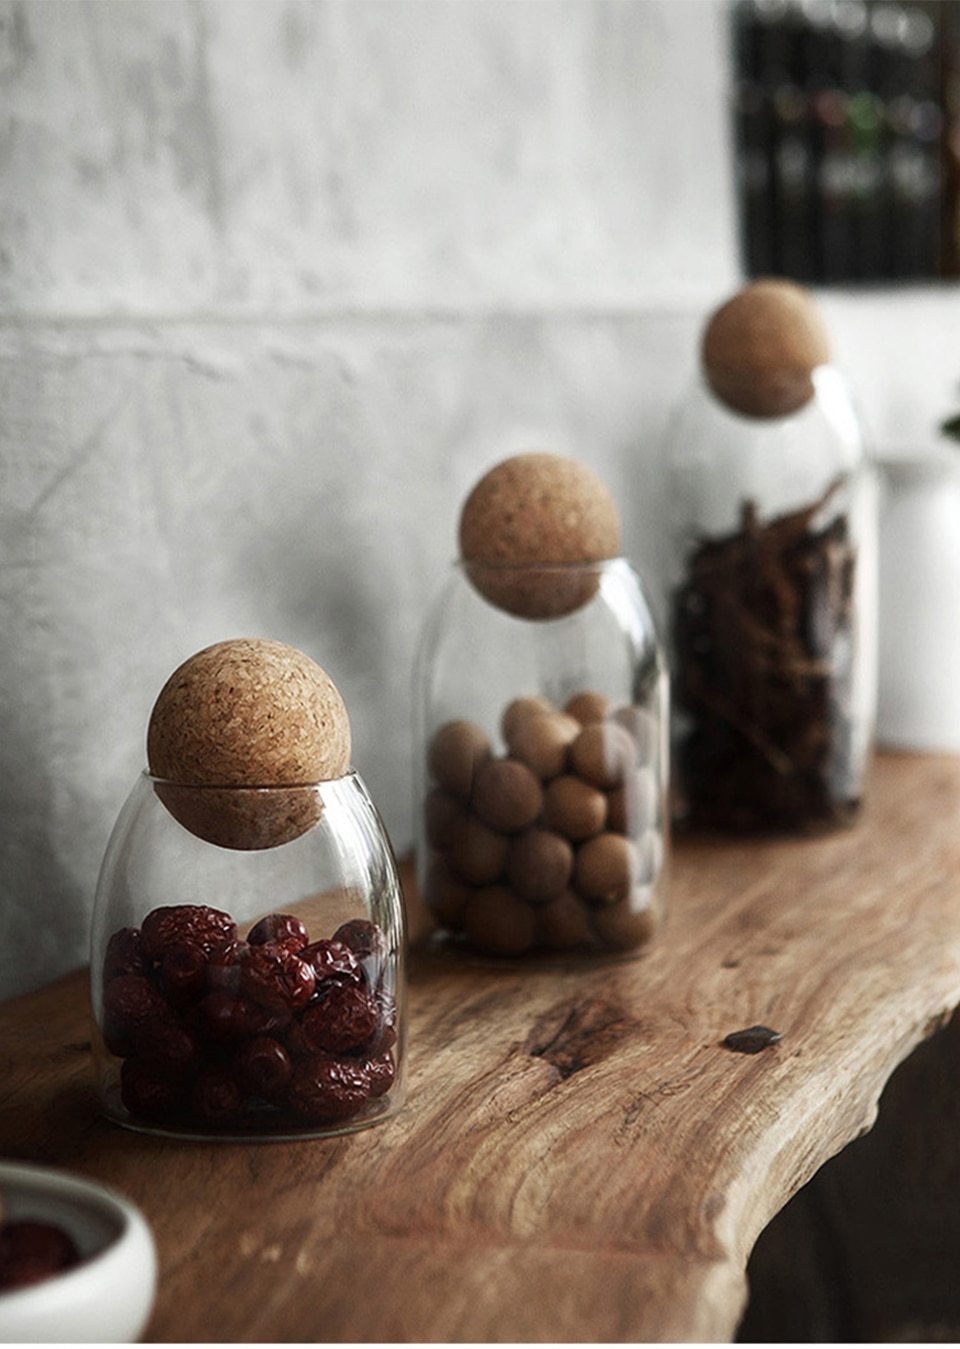 Palo - Modern Nordic Round Cork Storage Jar